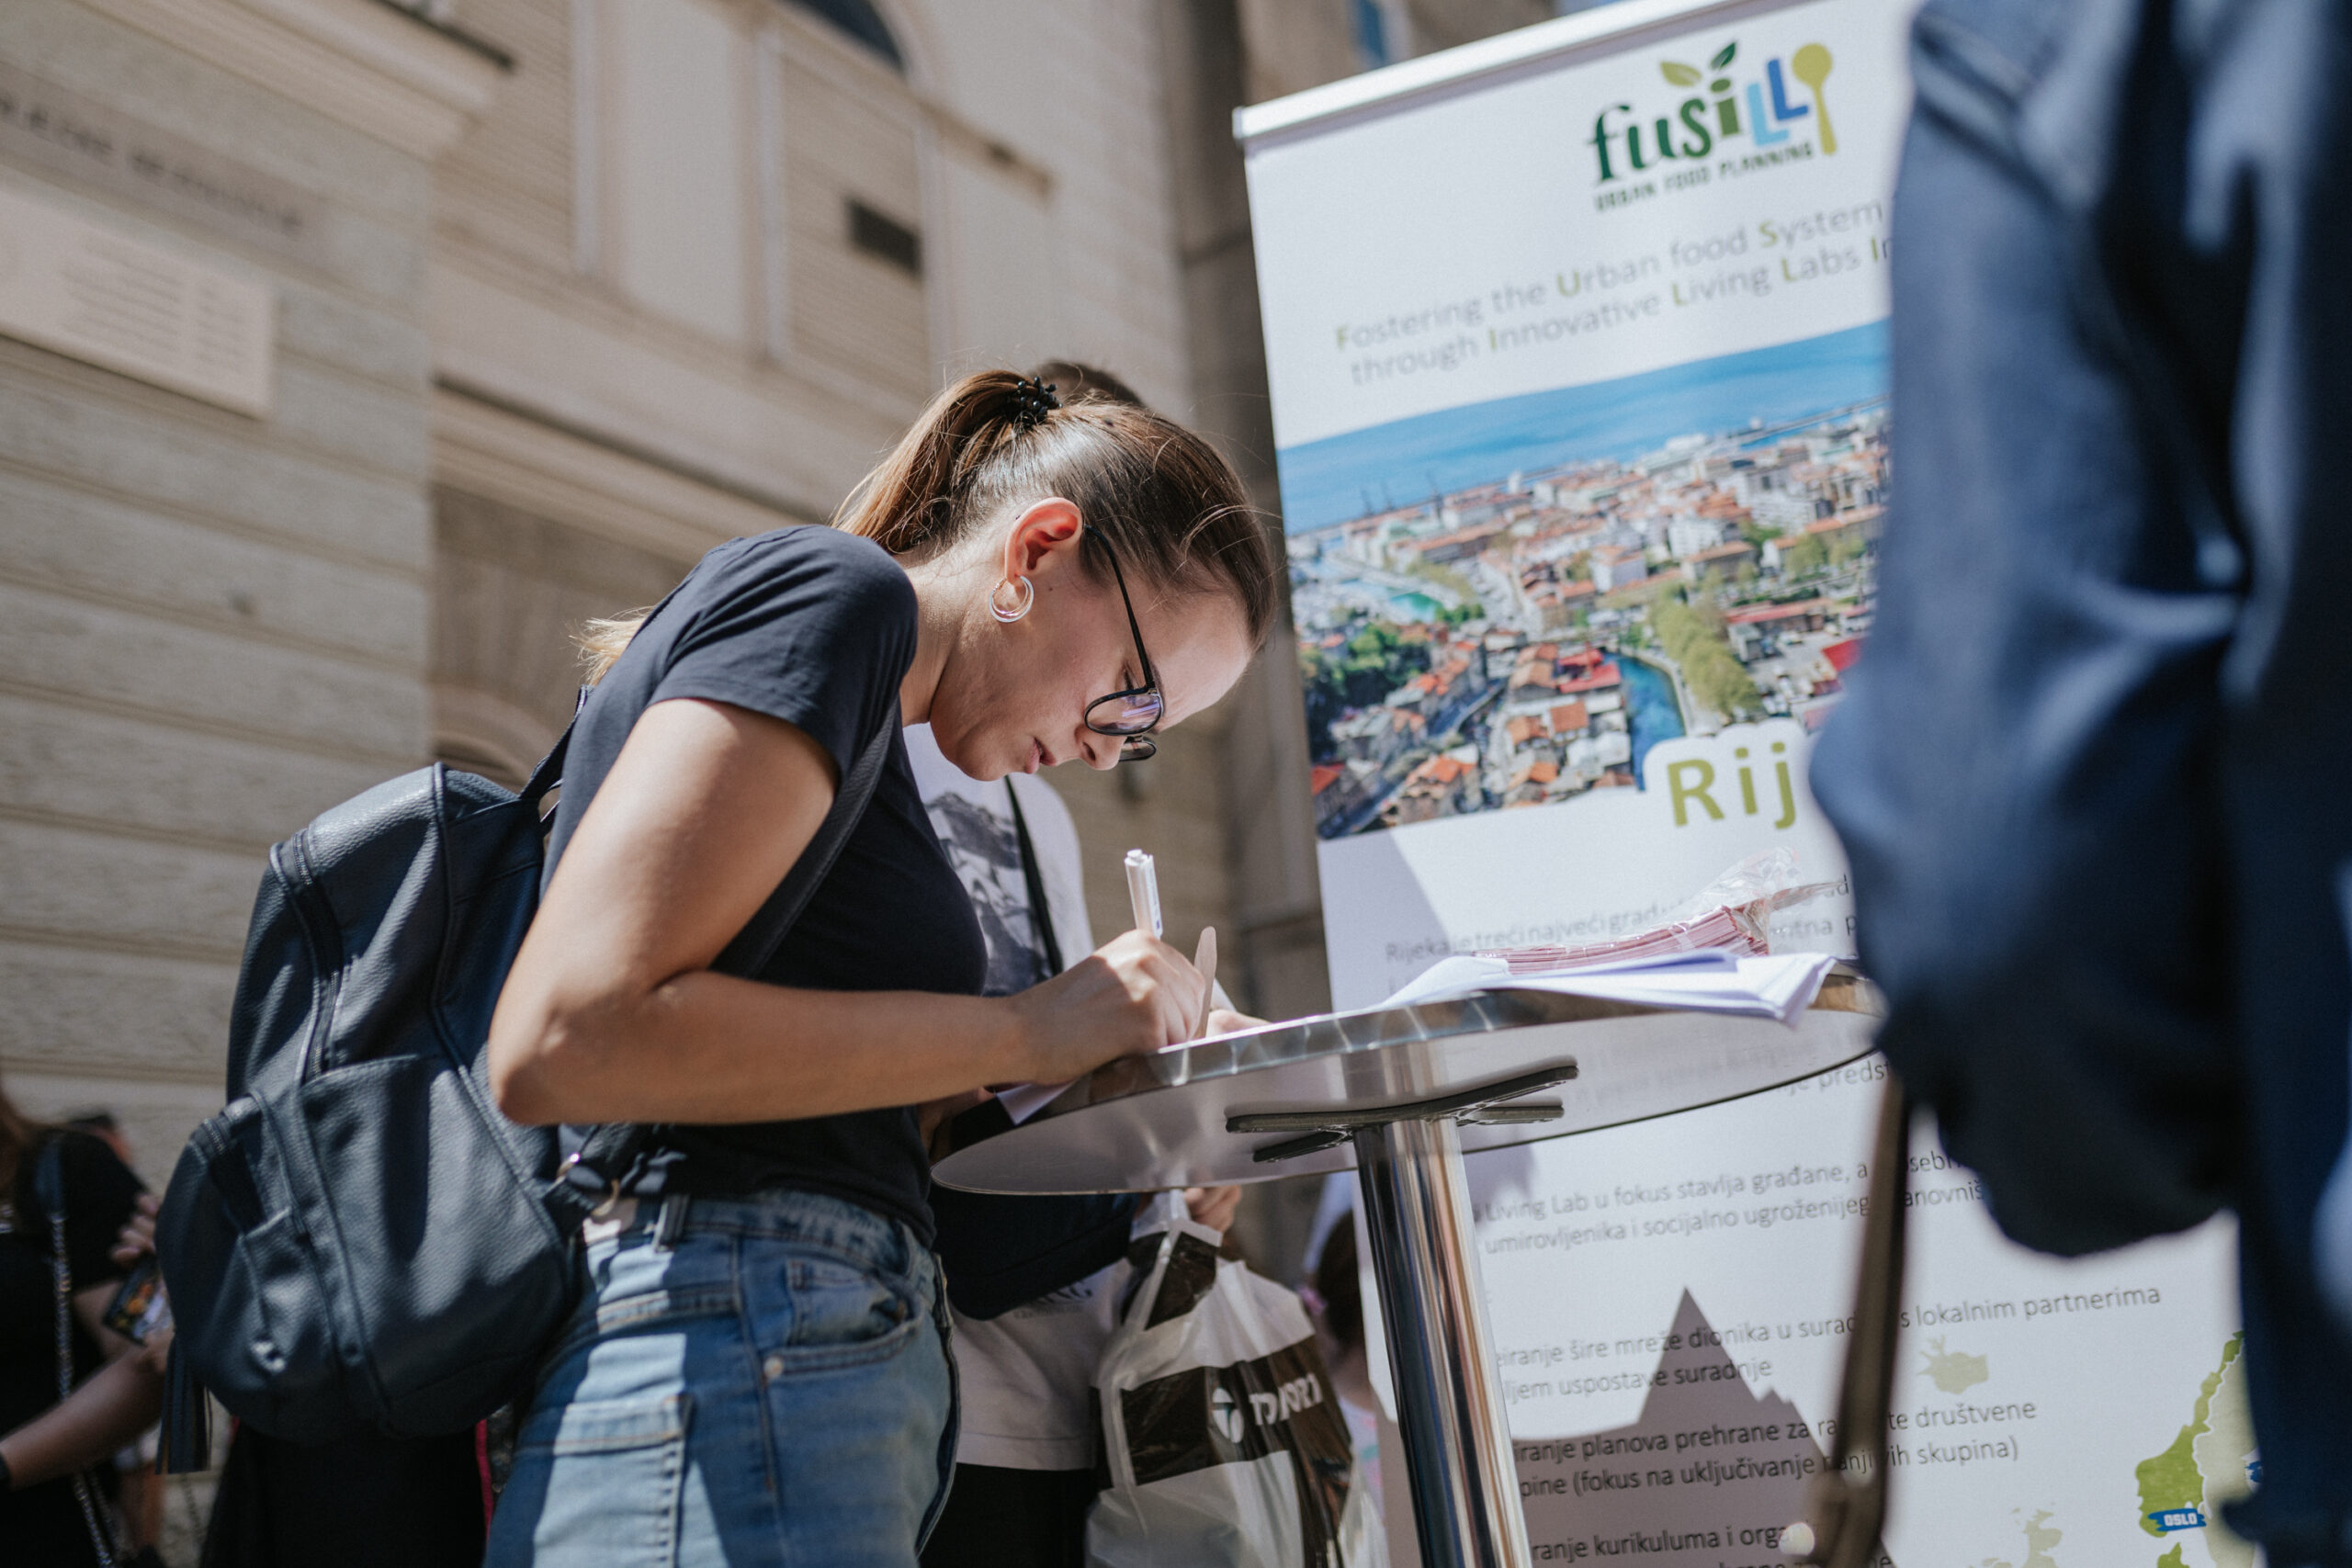 Visitors of the Porto Etno Festival filling out the FUSILLI survey